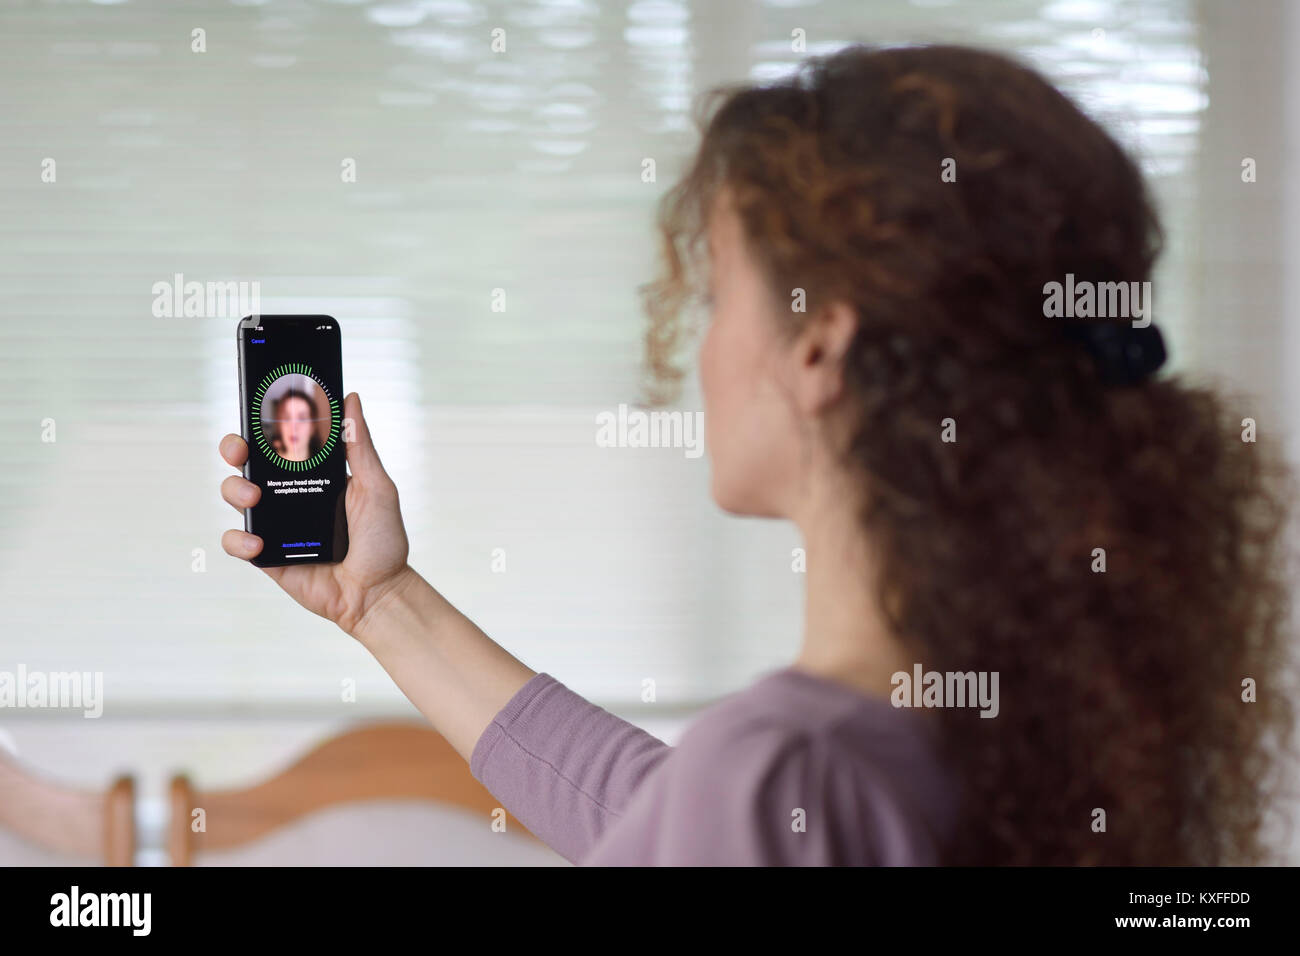 Junge Frau mit dem iPhone X einrichten Face ID, biometrische Authentifizierung, durch ihr Gesicht Scannen mit einer neuen Tiefe sensing Kamera Stockfoto